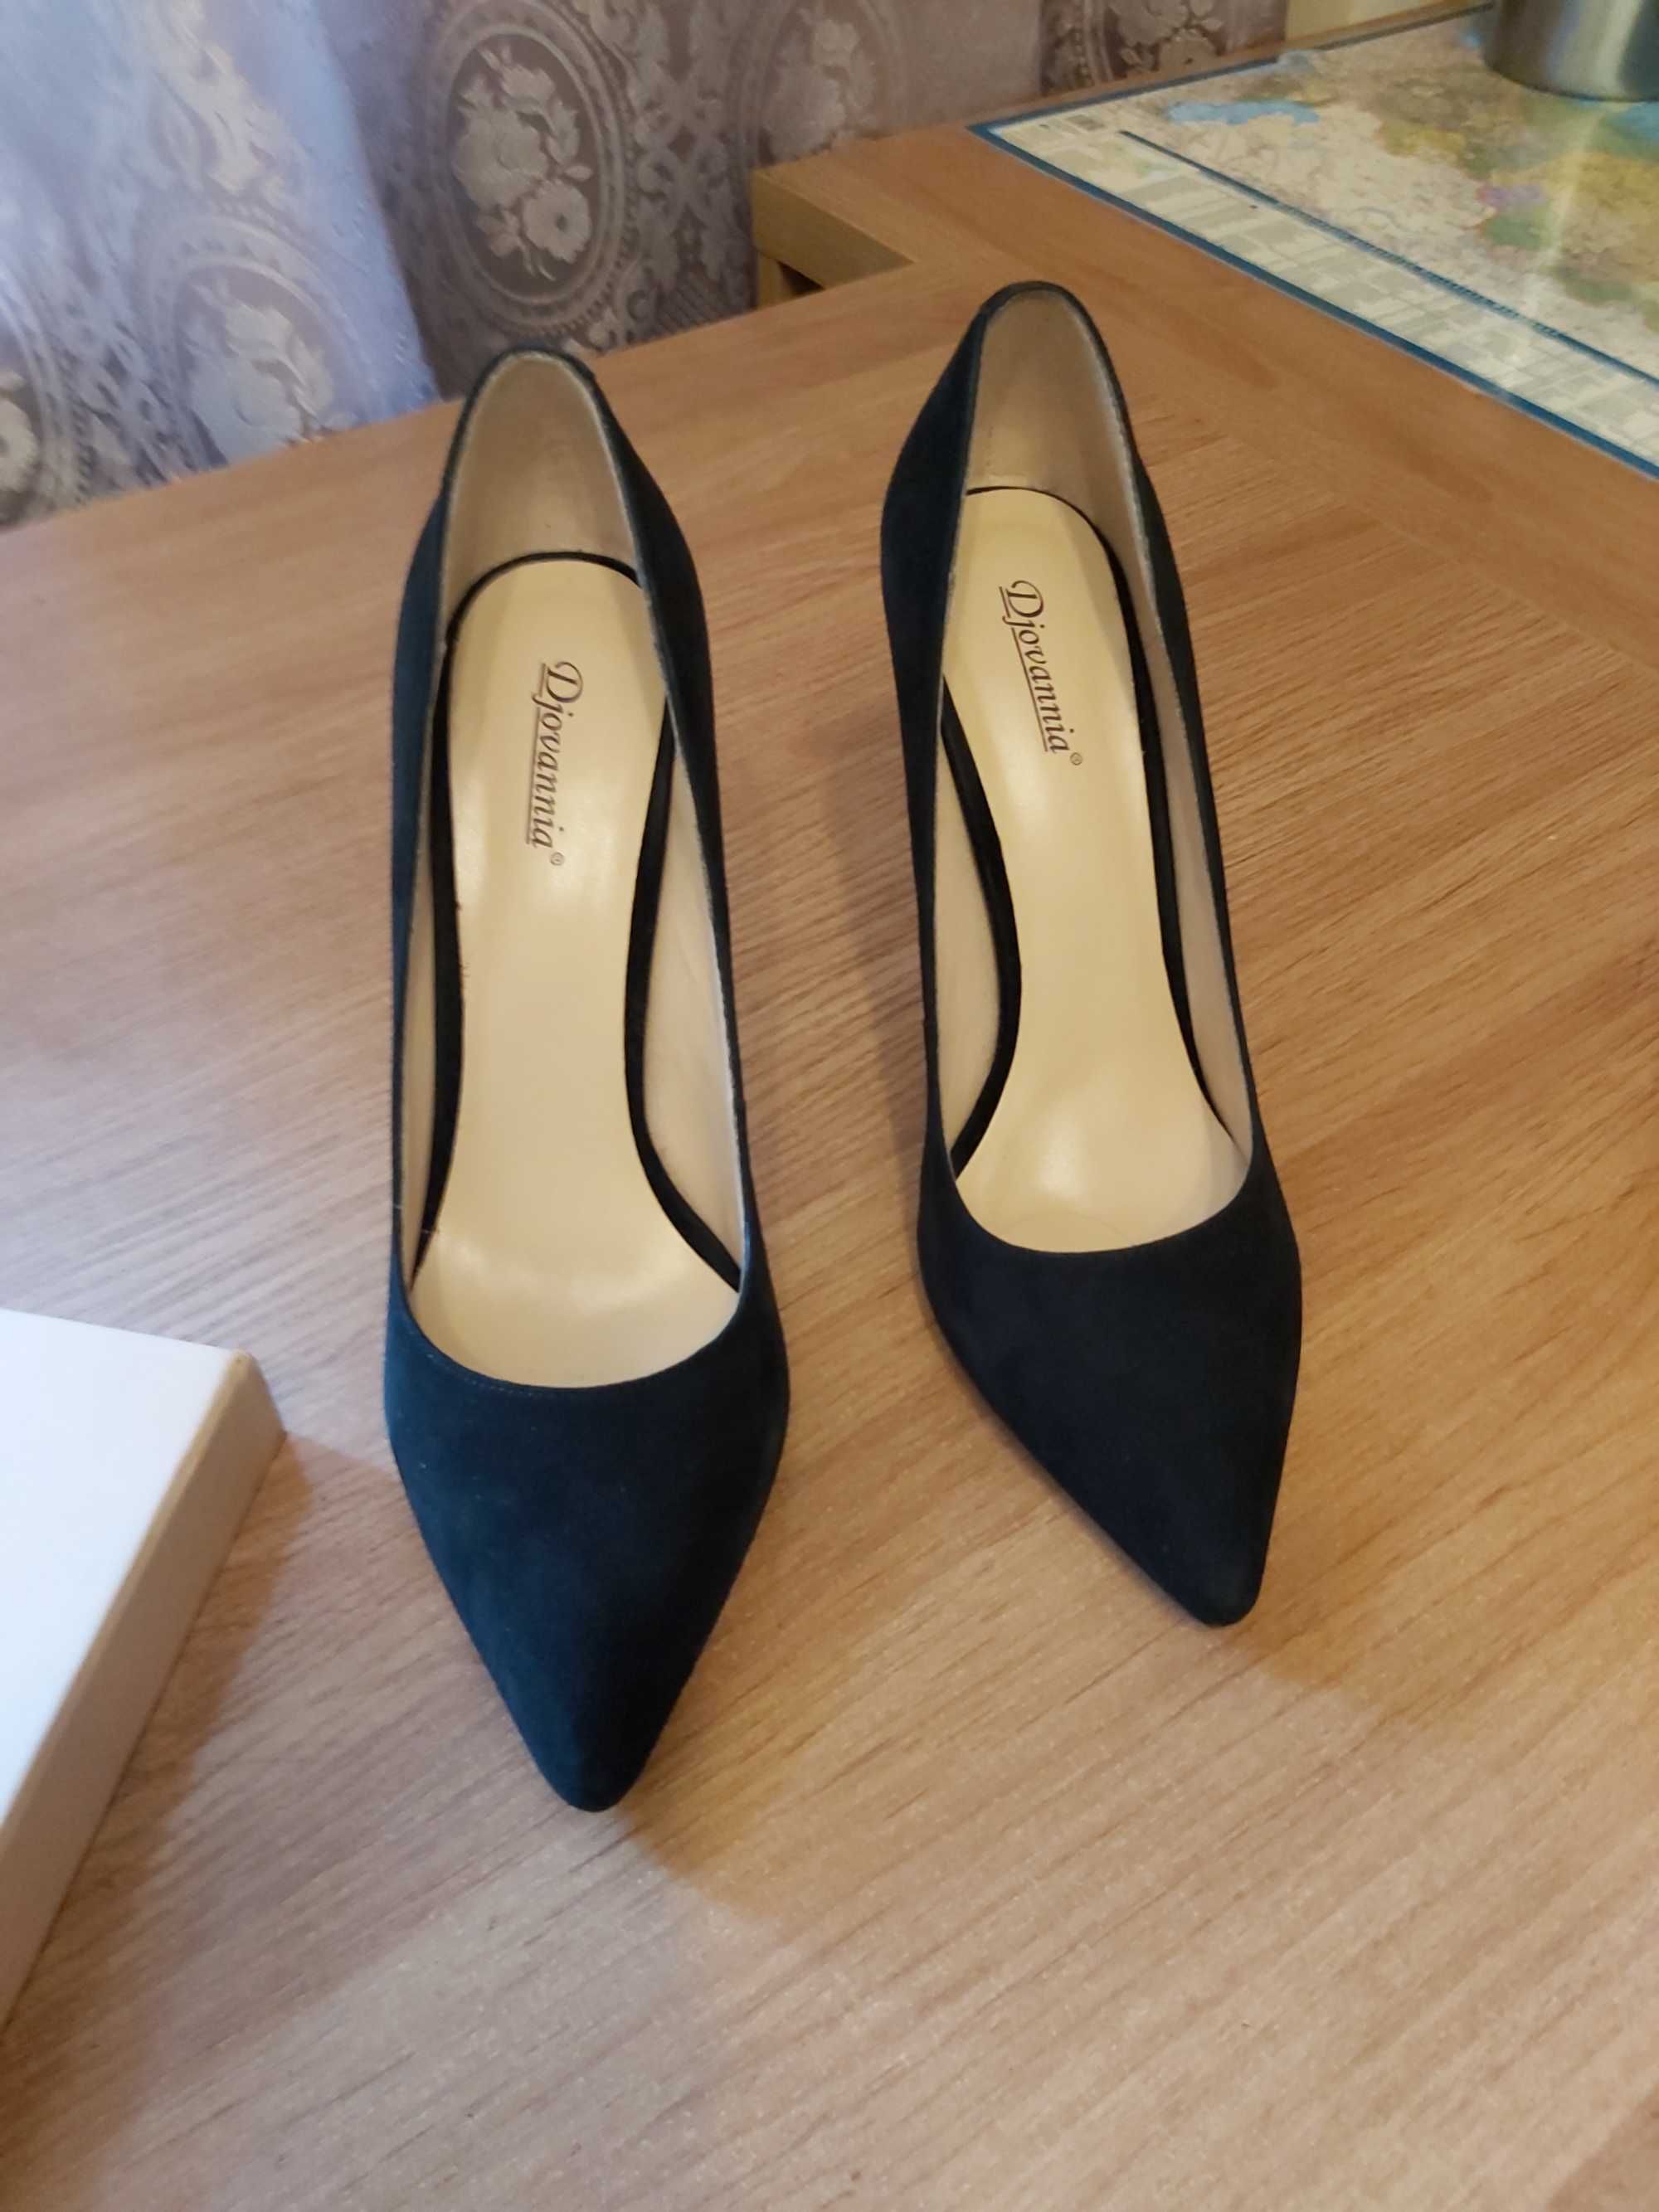 Продам туфли Djovannia (новые) чёрные, замшевые